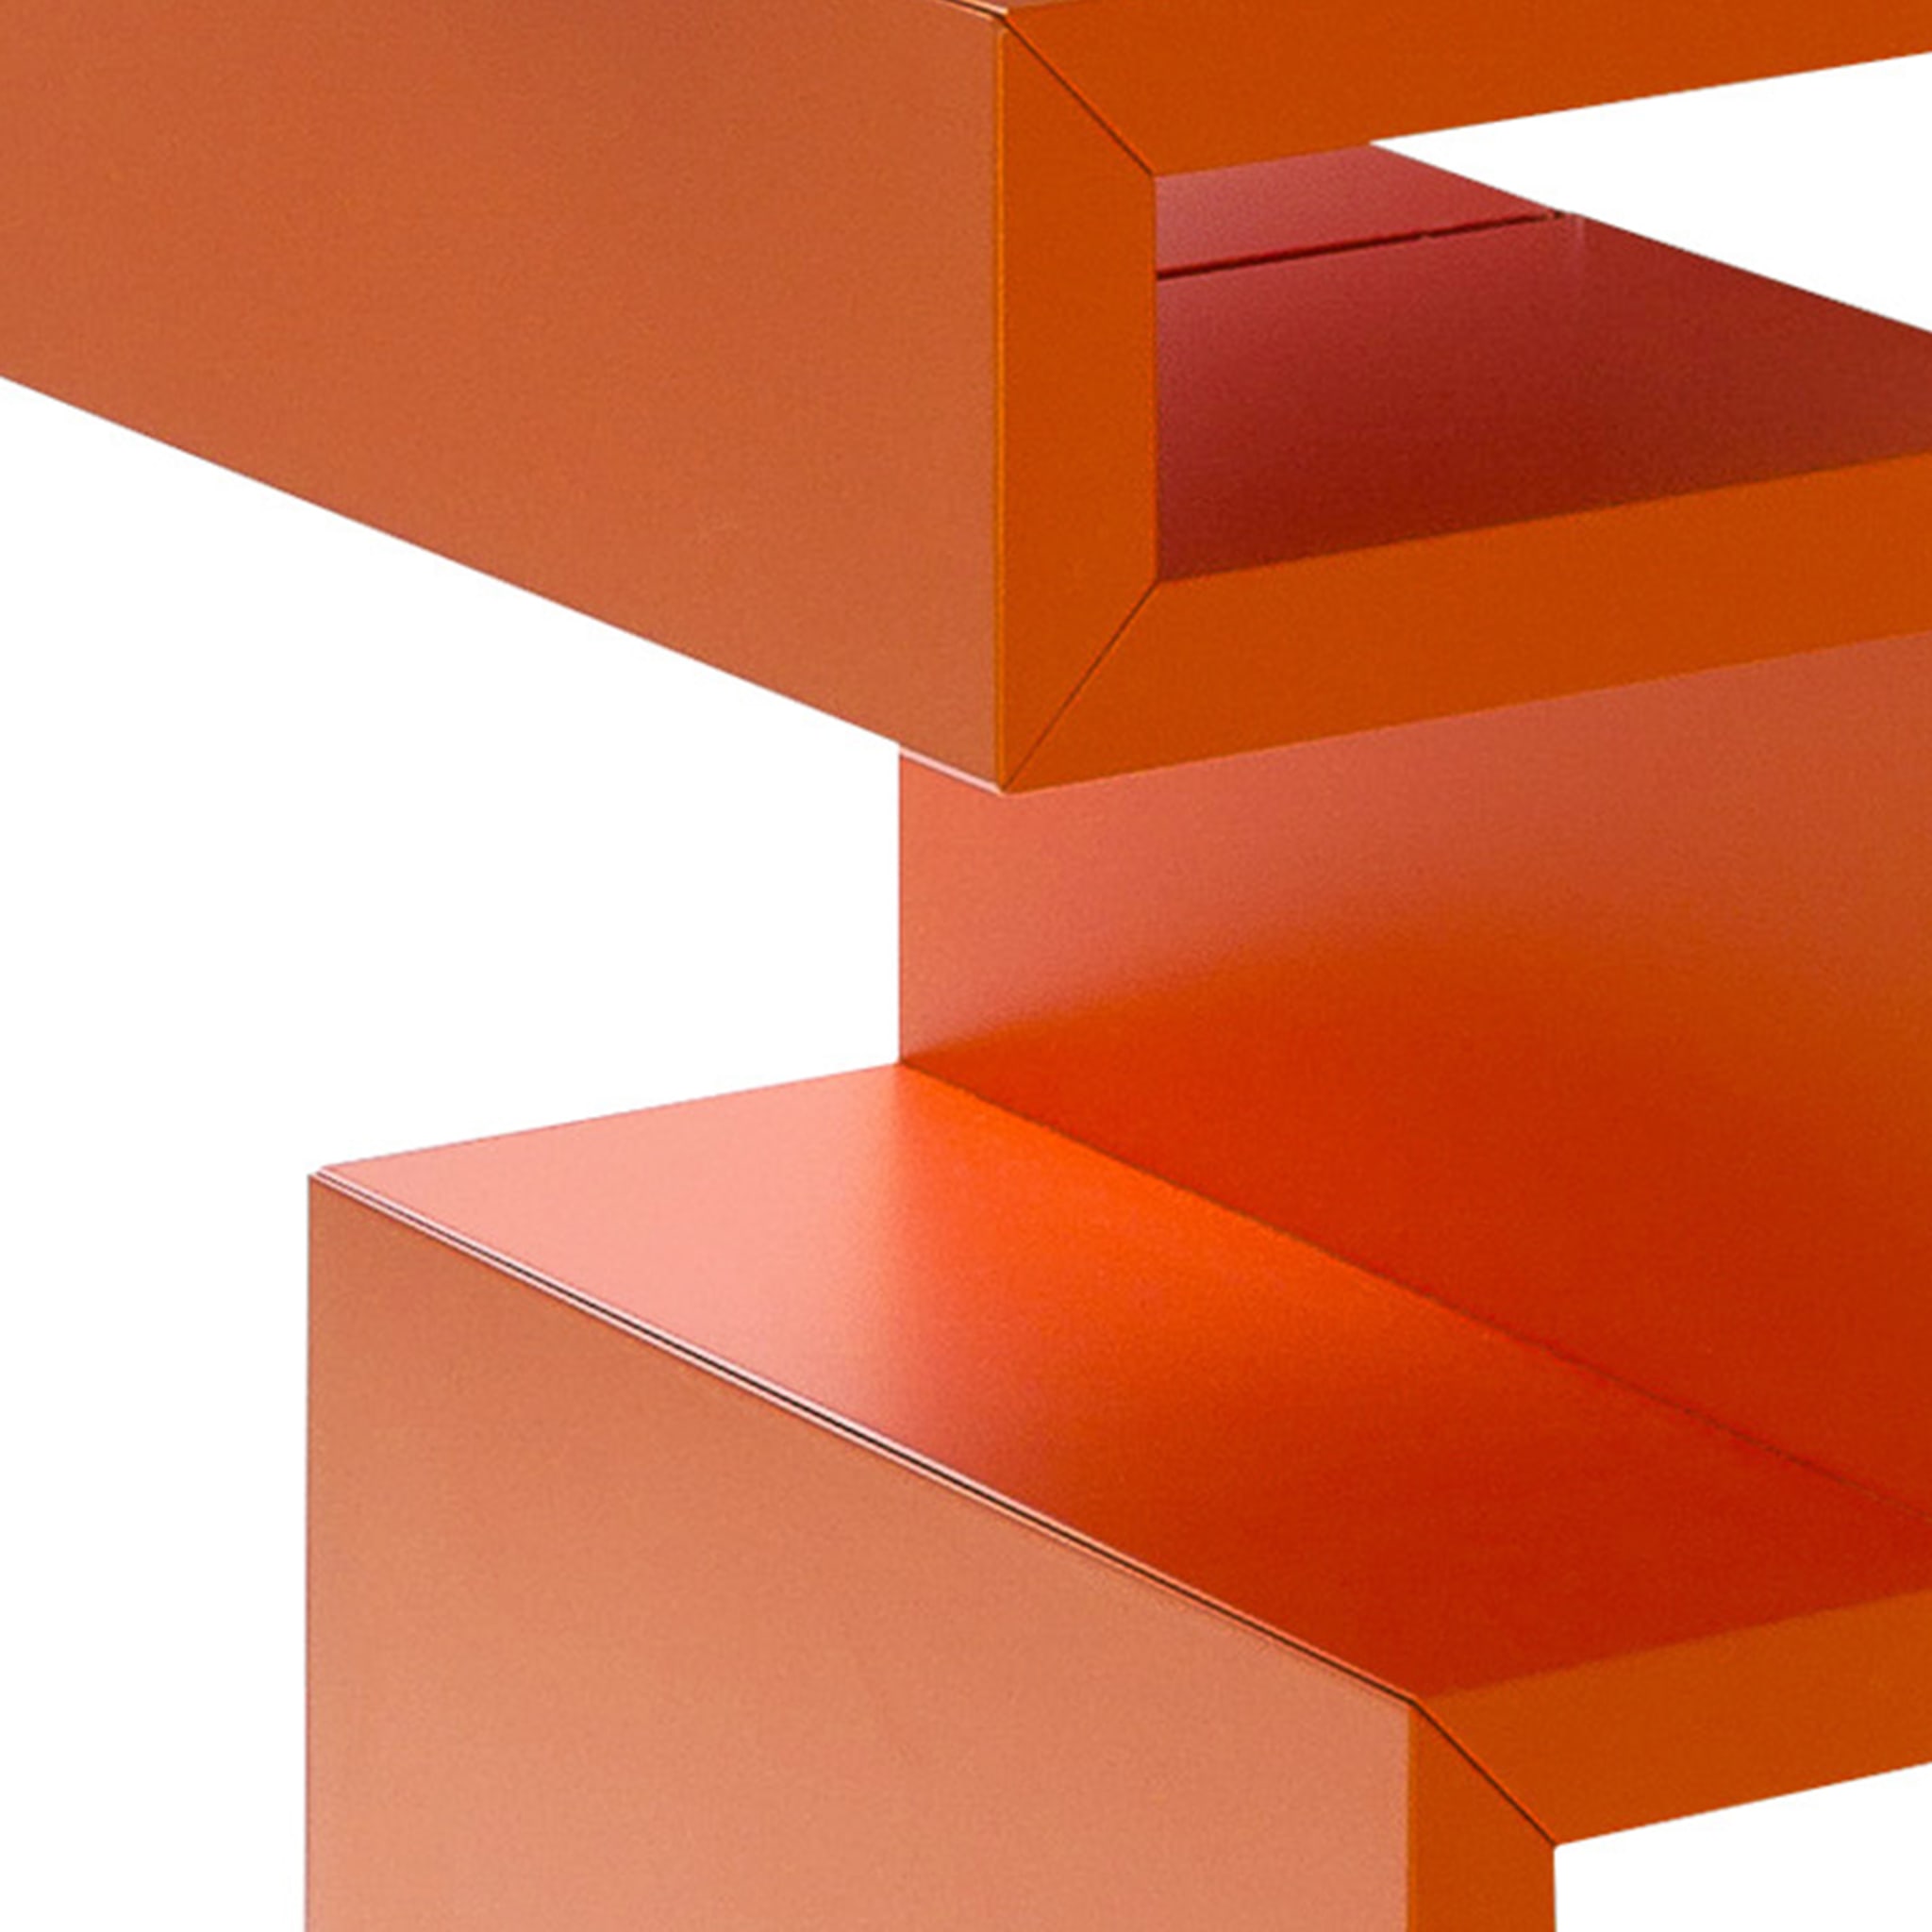 Todo Orange Wall Bookcase by Giulia Contaldo - Alternative view 1